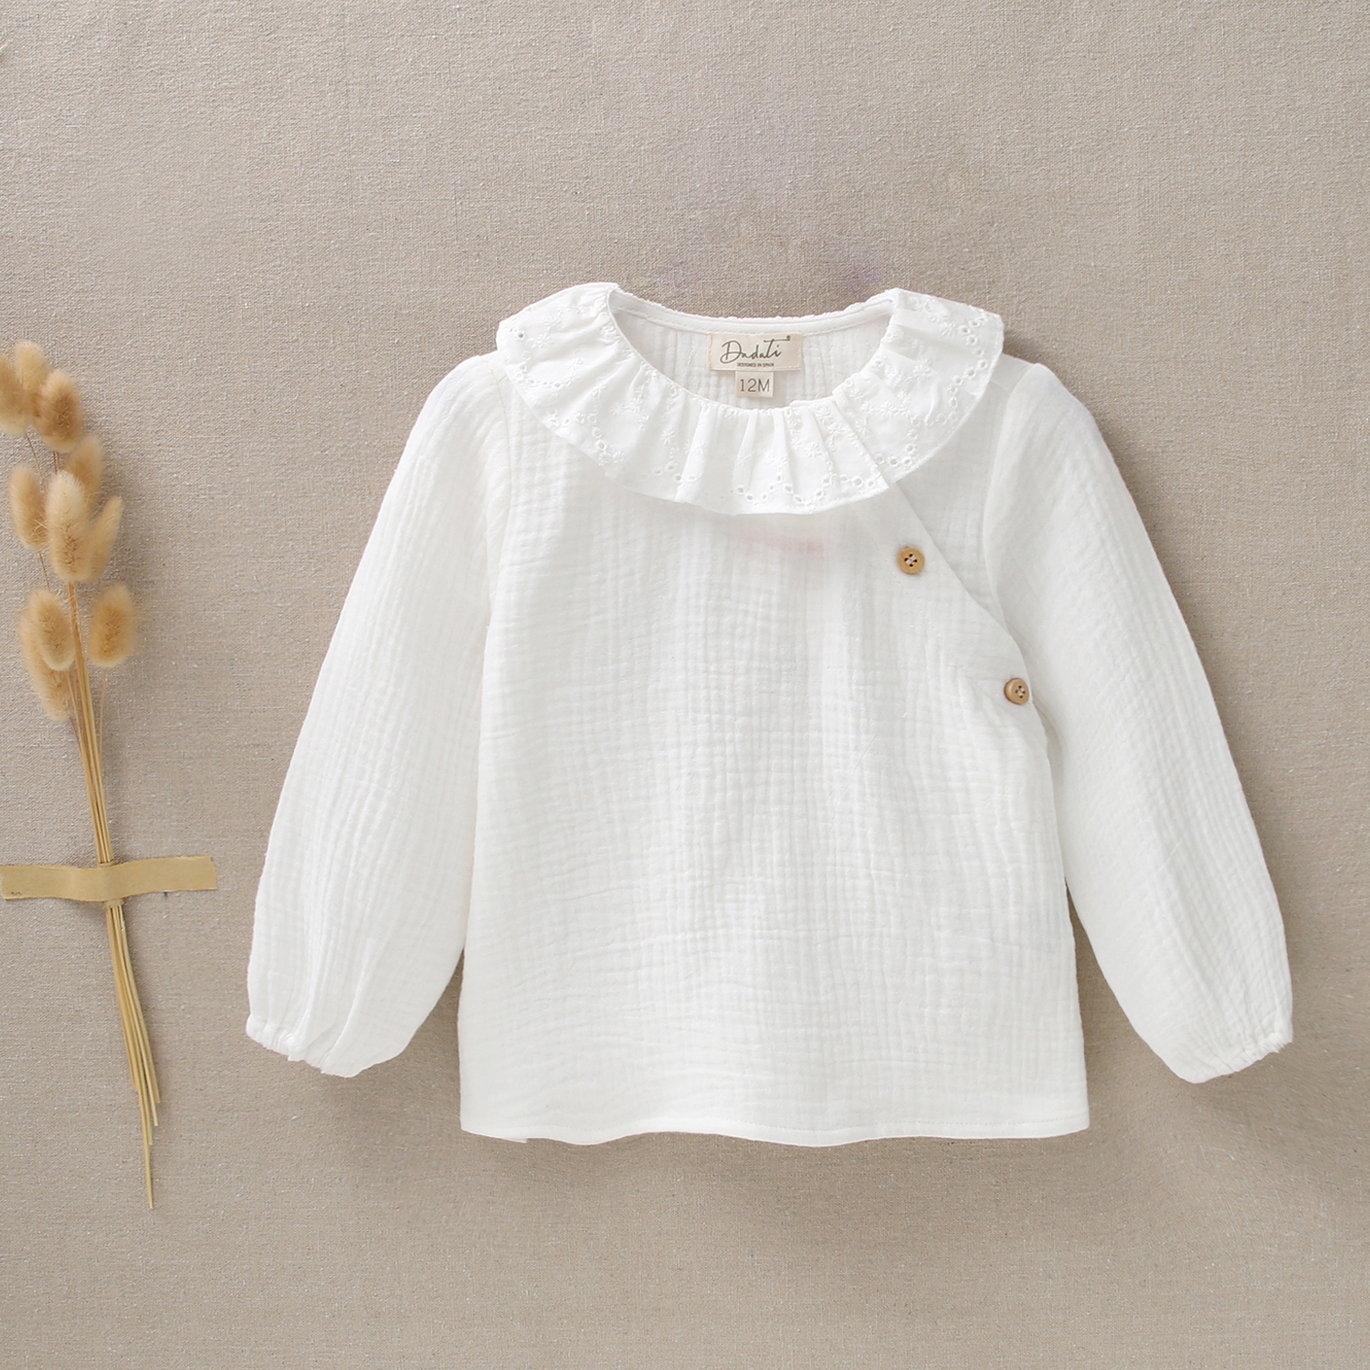 Camisa de bebé niña con cuello volante en blanco. Dadati - Moda infantil